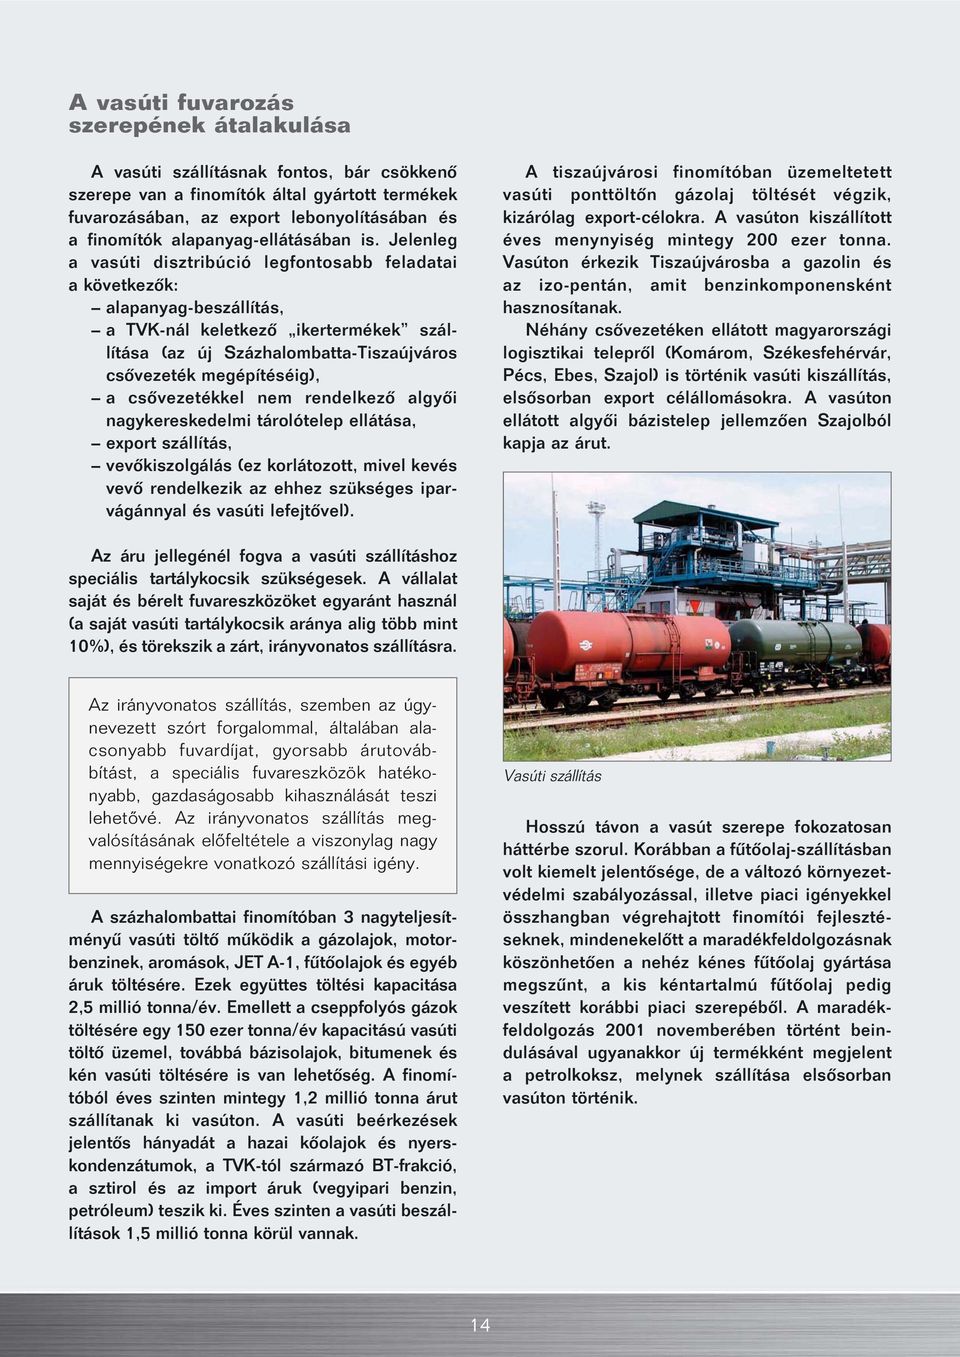 Jelenleg a vasúti disztribúció legfontosabb feladatai a következôk: alapanyag-beszállítás, a TVK-nál keletkezô ikertermékek szállítása (az új Százhalombatta-Tiszaújváros csôvezeték megépítéséig), a